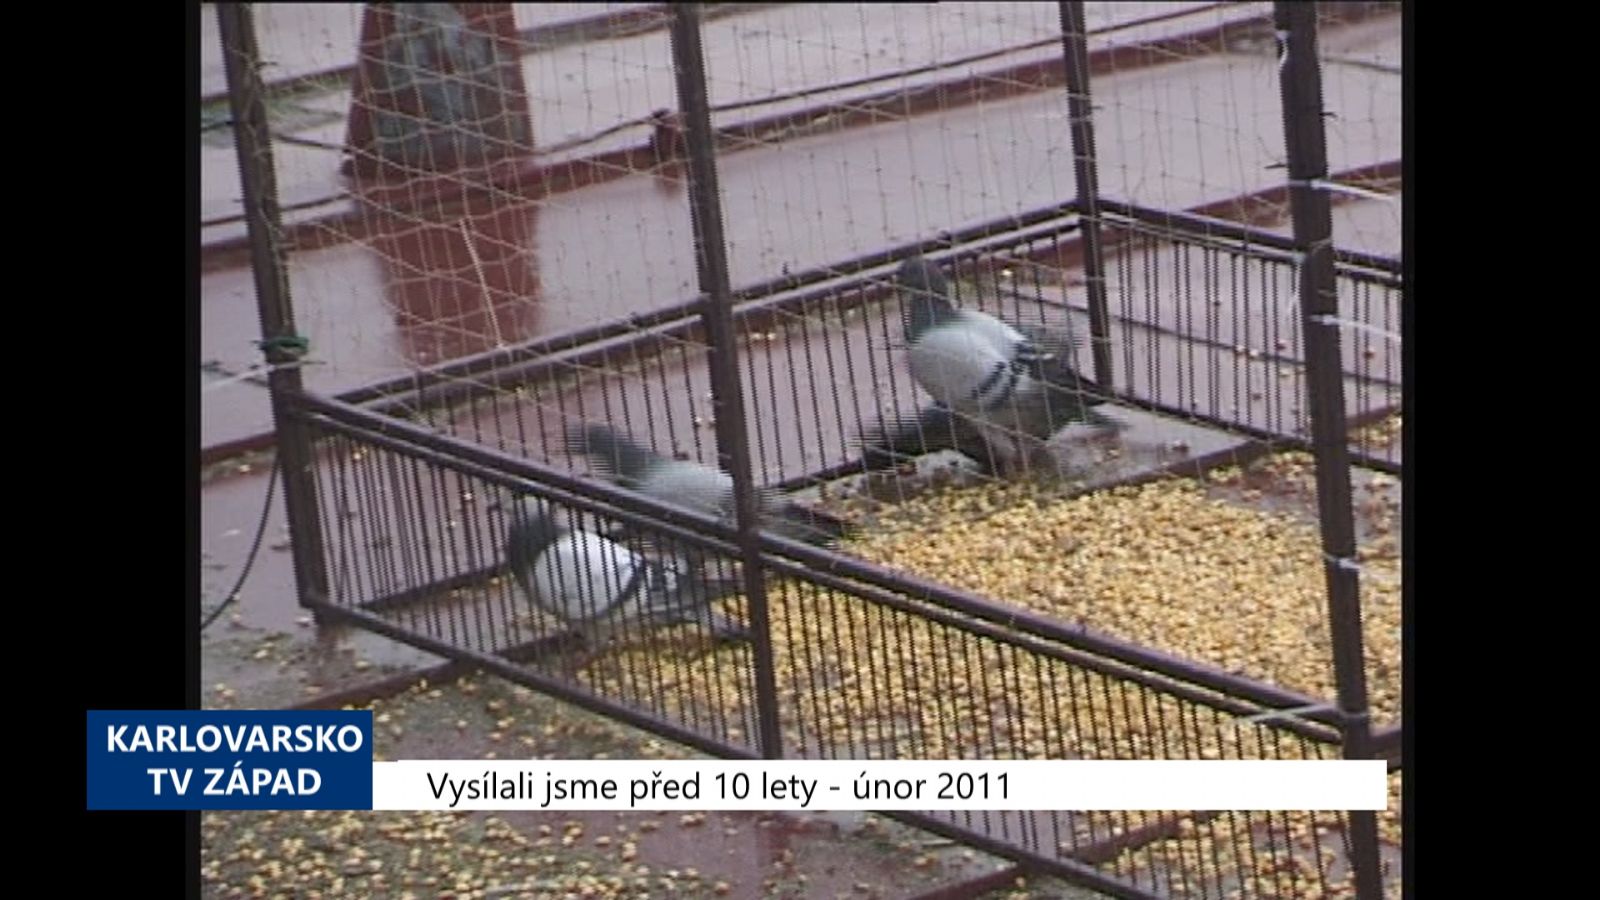 2011 – Cheb: Odchyt holubů přijde na 130 tisíc korun (4296) (TV Západ)